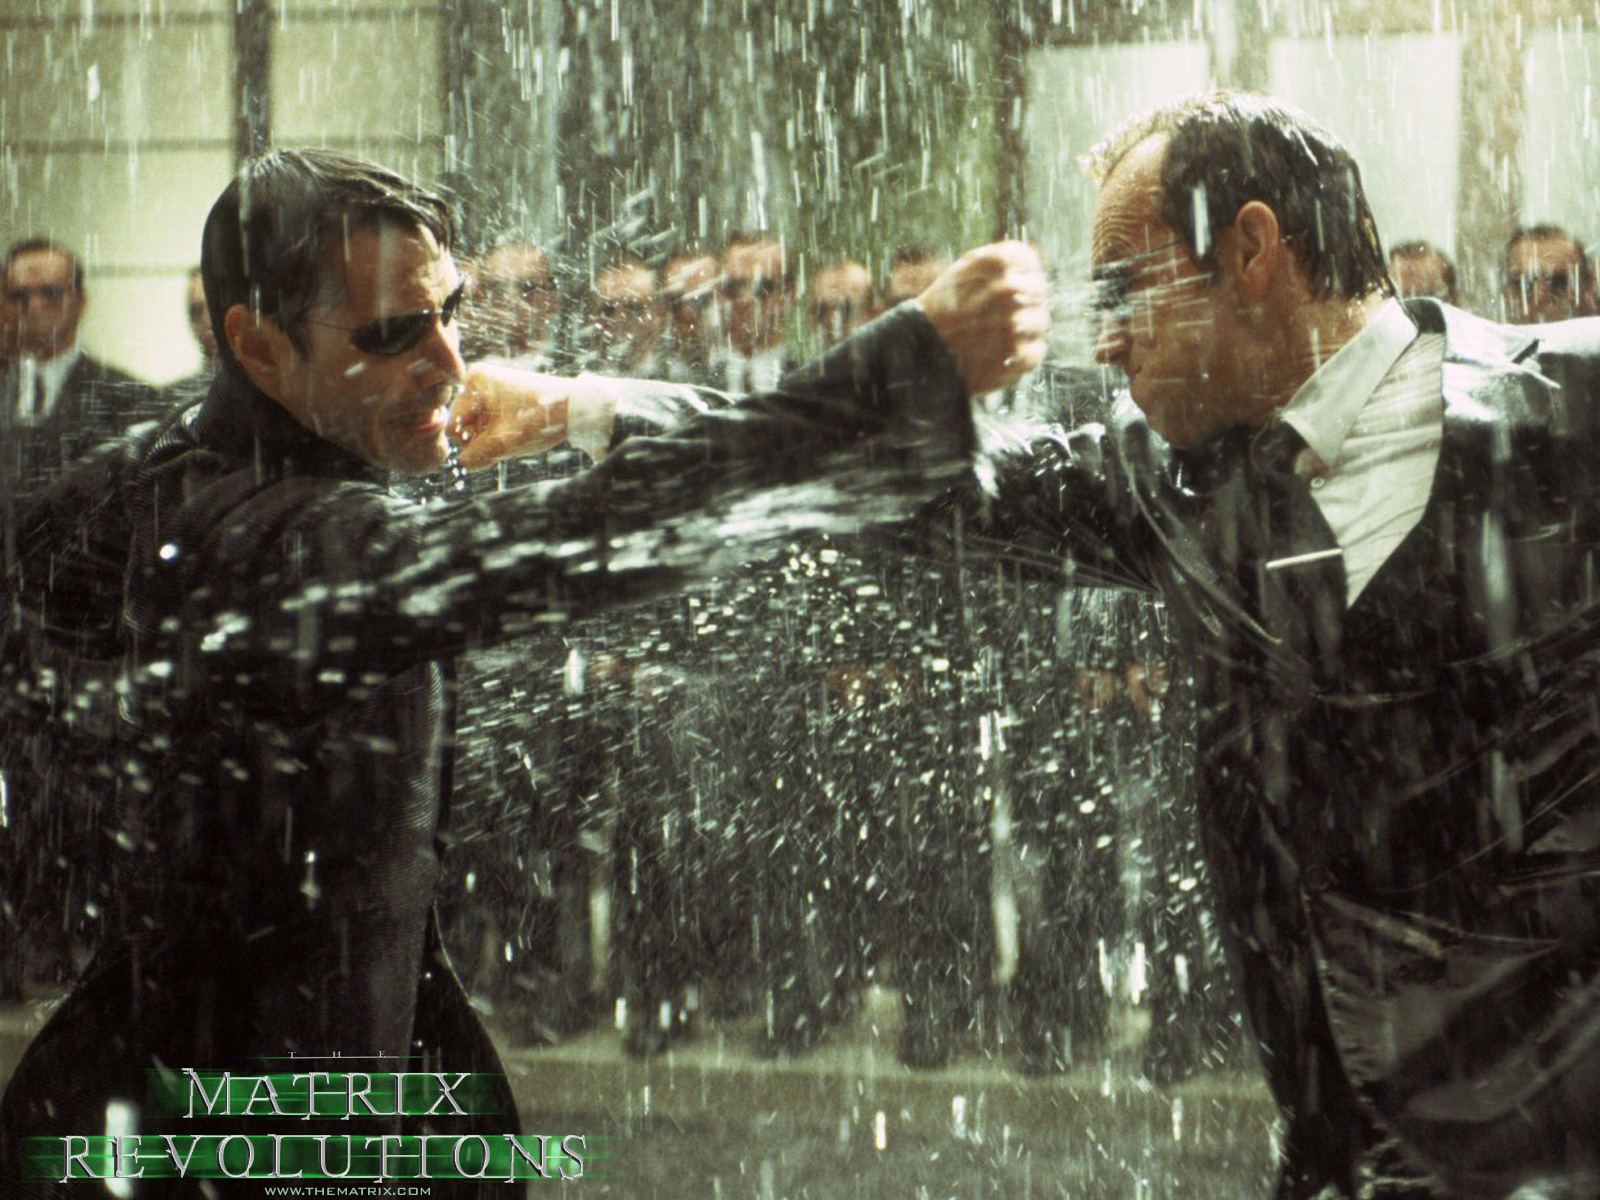 Download full size Matrix wallpaper / Movies / 1600x1200